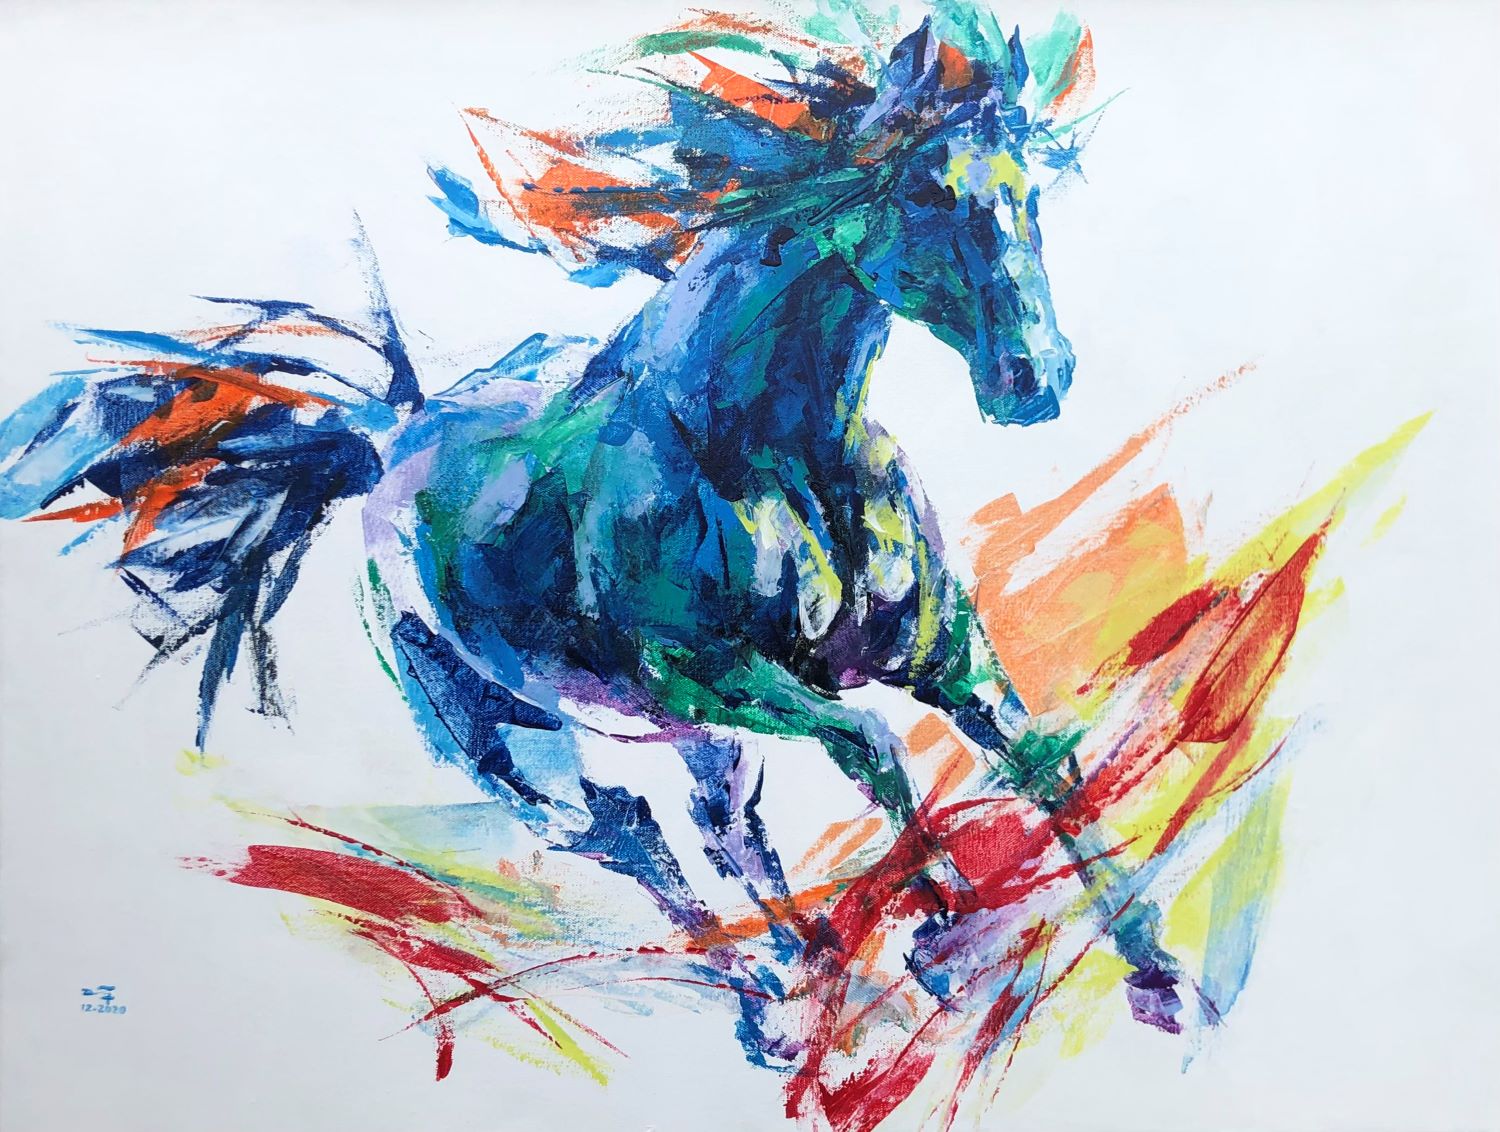 Với sức mạnh của vẽ ngựa hoang acrylic, những con ngựa hoang trong đại ngàn đến bạn ngay trên bức tranh. Hãy cảm nhận sự khát khao tự do, sự kiên cường và vẻ đẹp hoang dã trong từng đường nét vẽ tình tế.